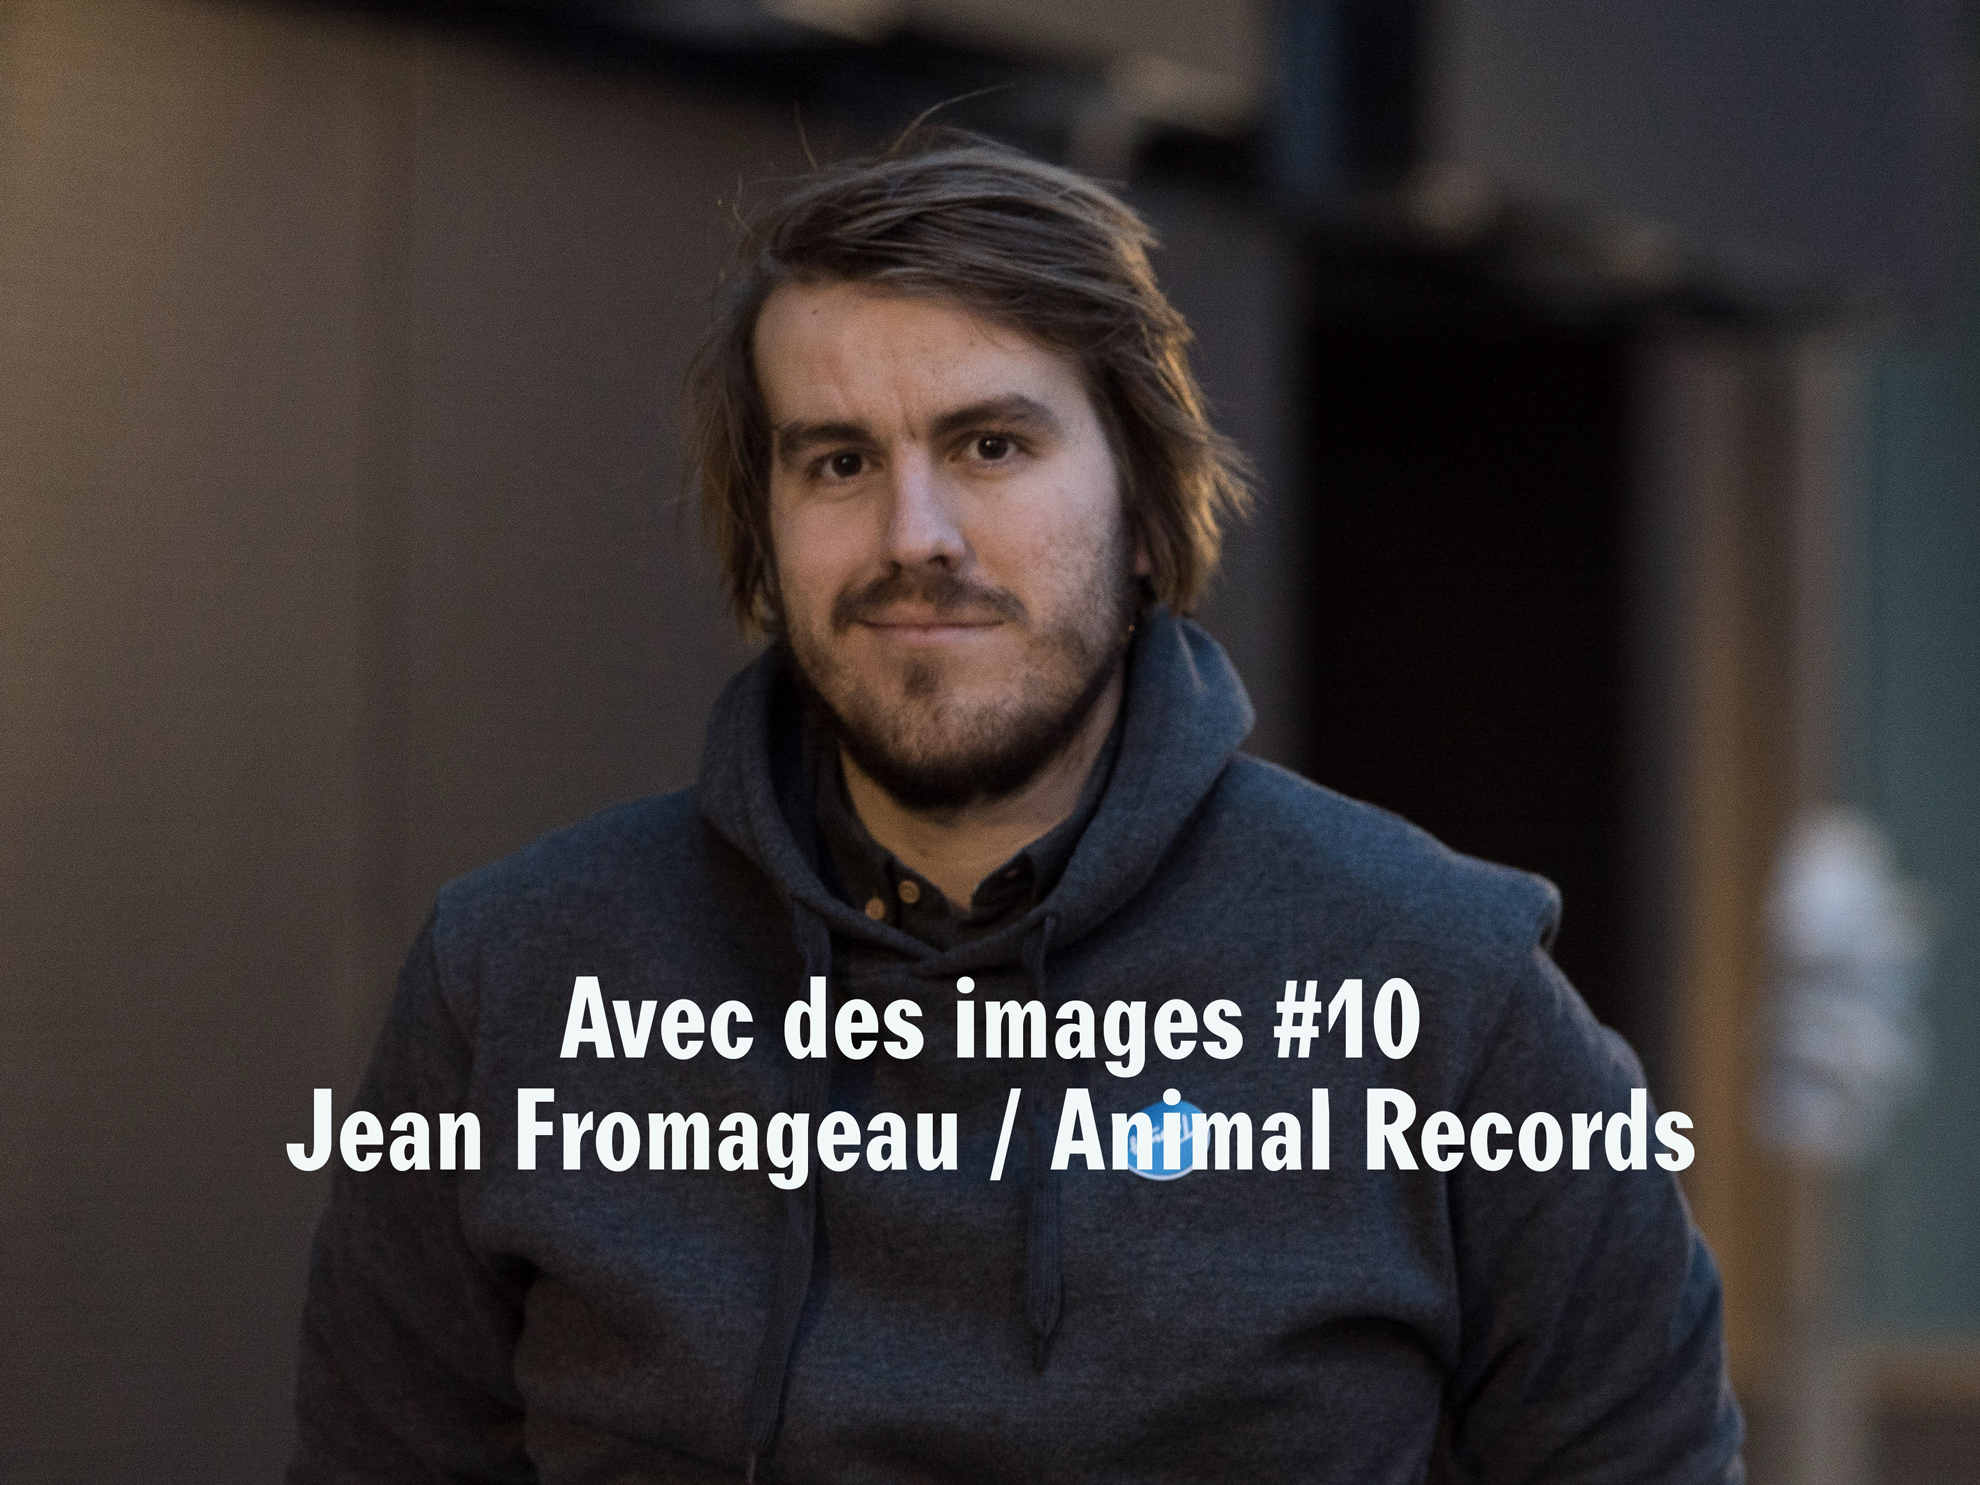 Jean Fromageau dans l'épisode #10 de l'émission Avec Des Images